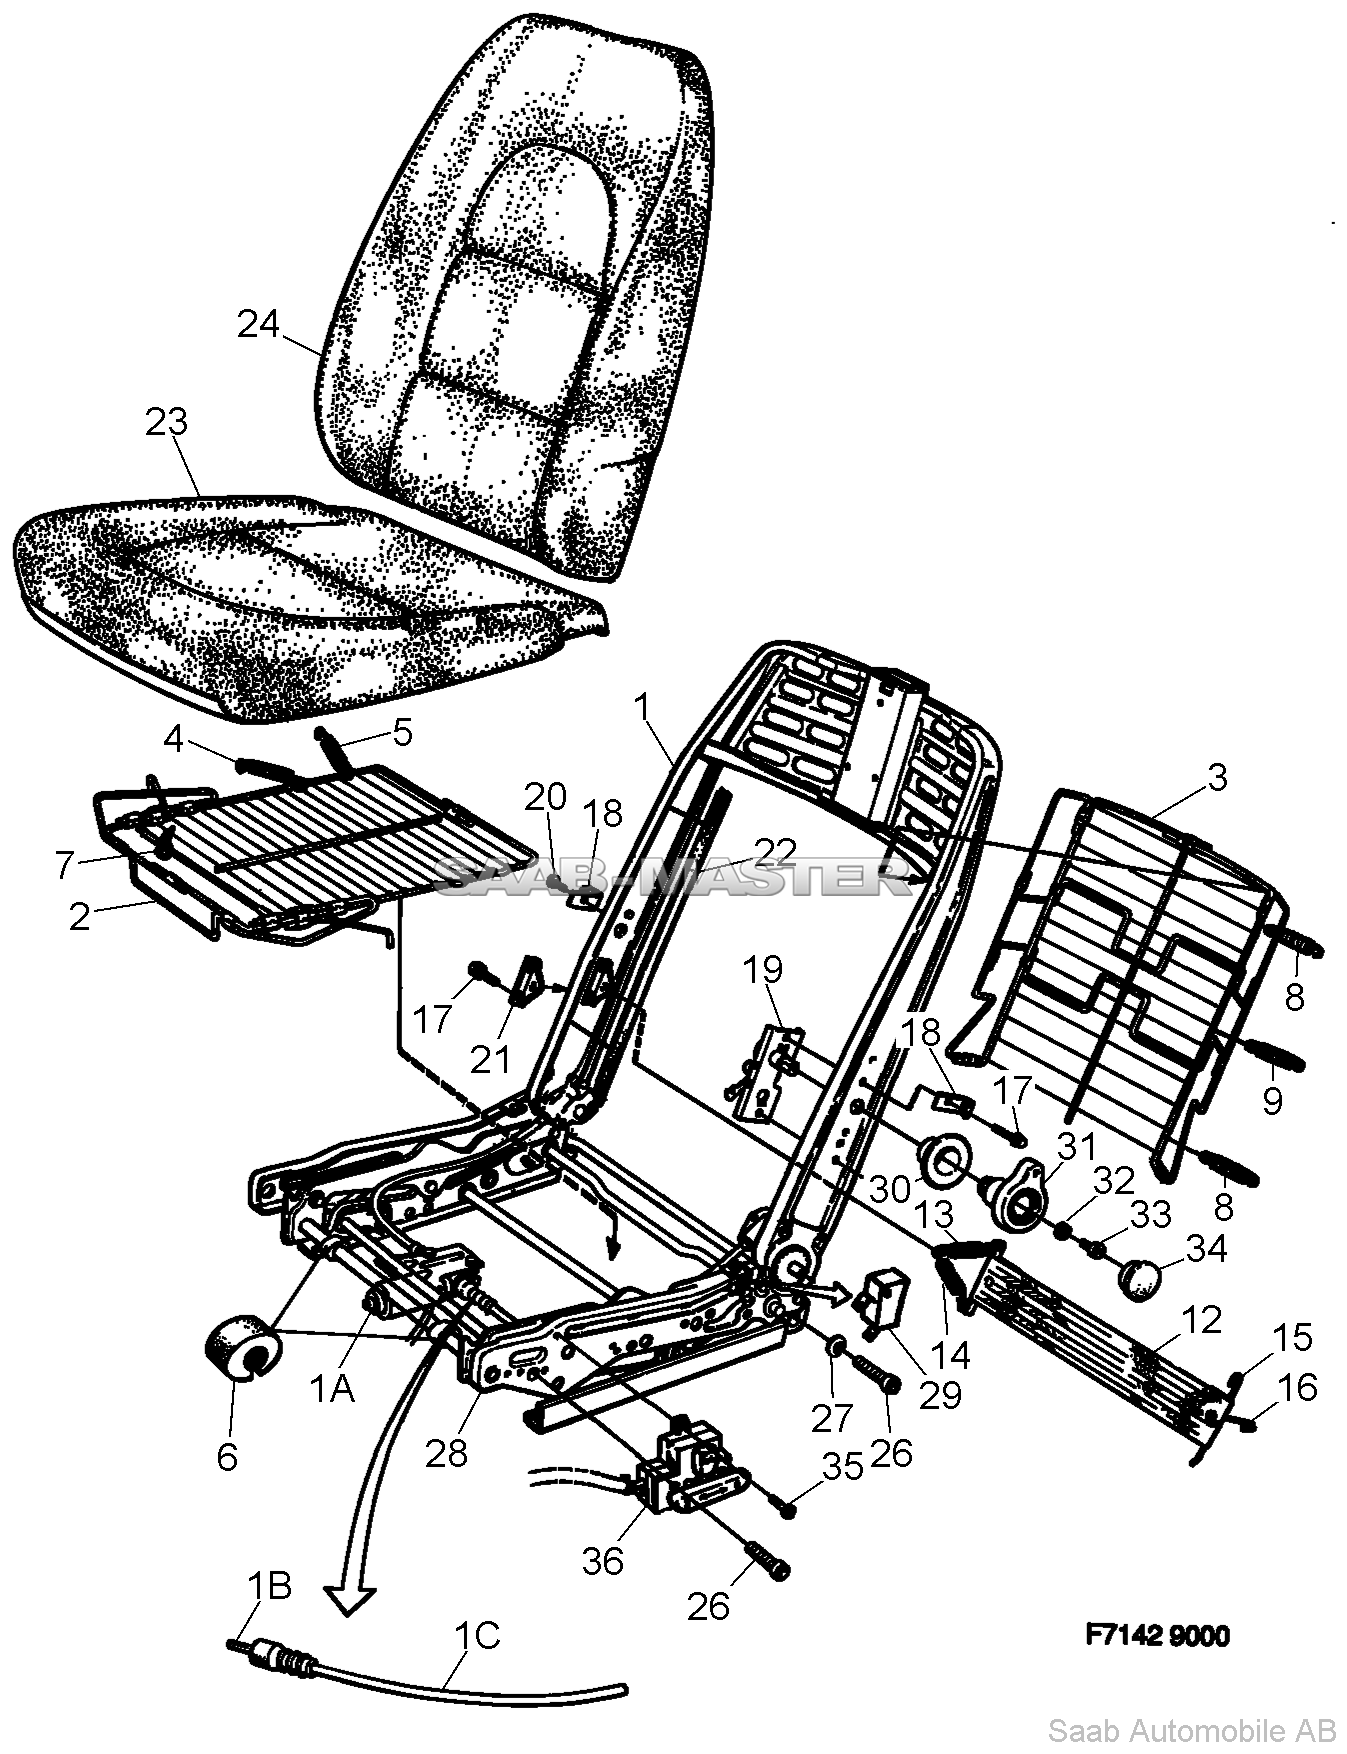 Кресла Часть 2 - Электроманеврируемые   Касается также SE 1988B.